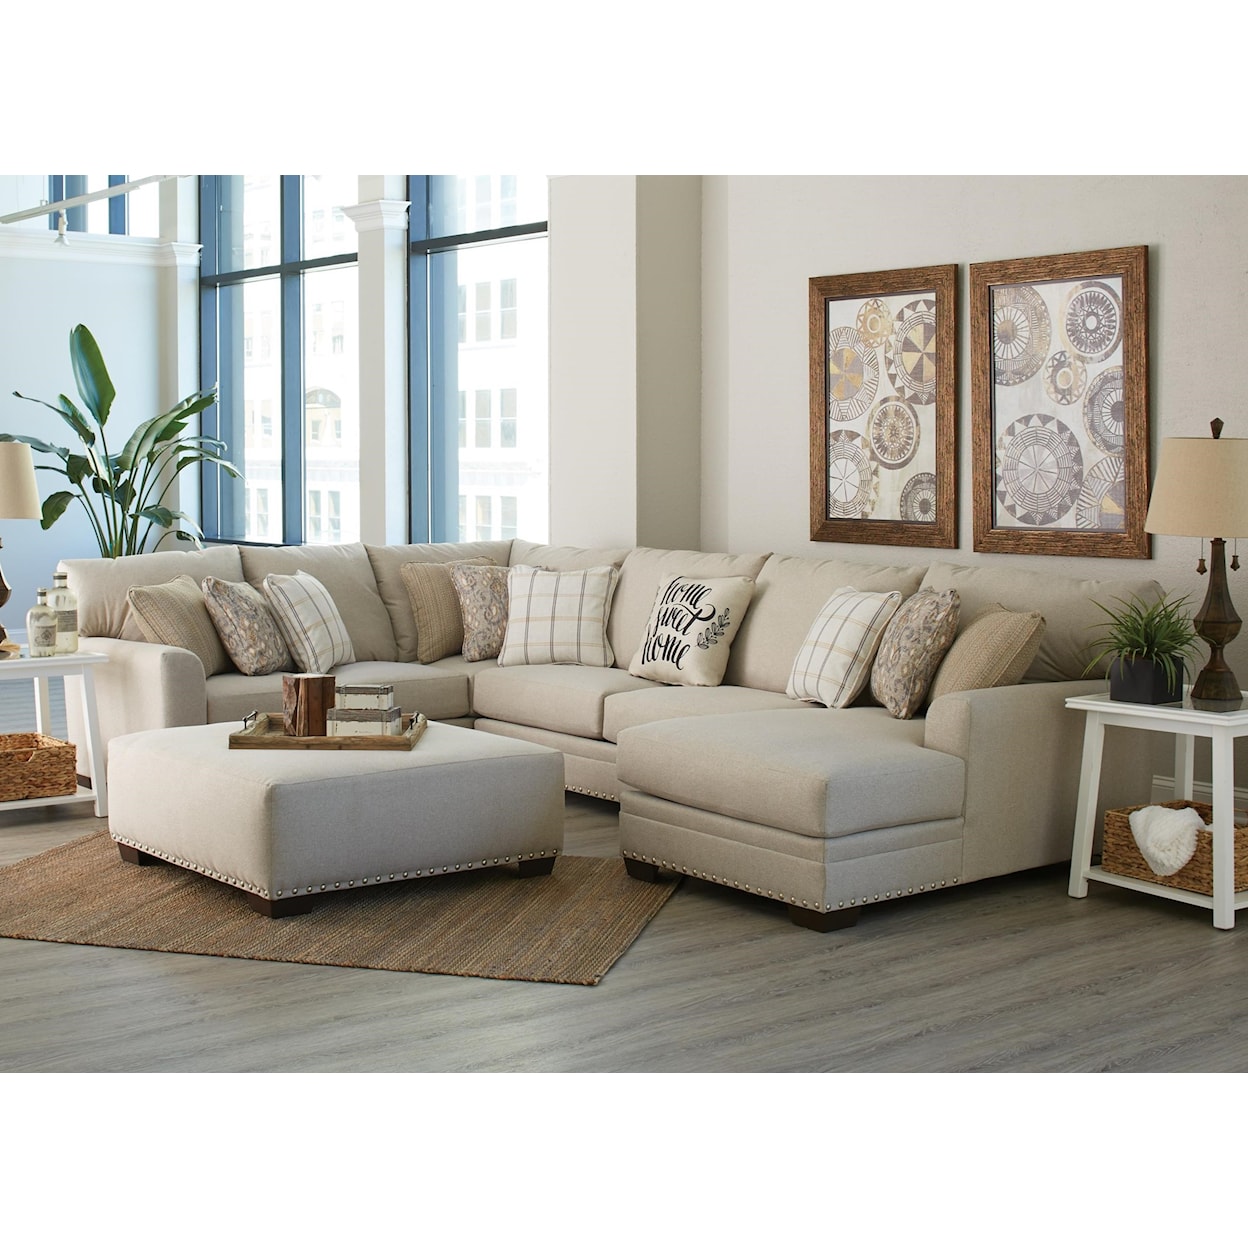 Carolina Furniture 4478 Middleton Stationary Living Room Group